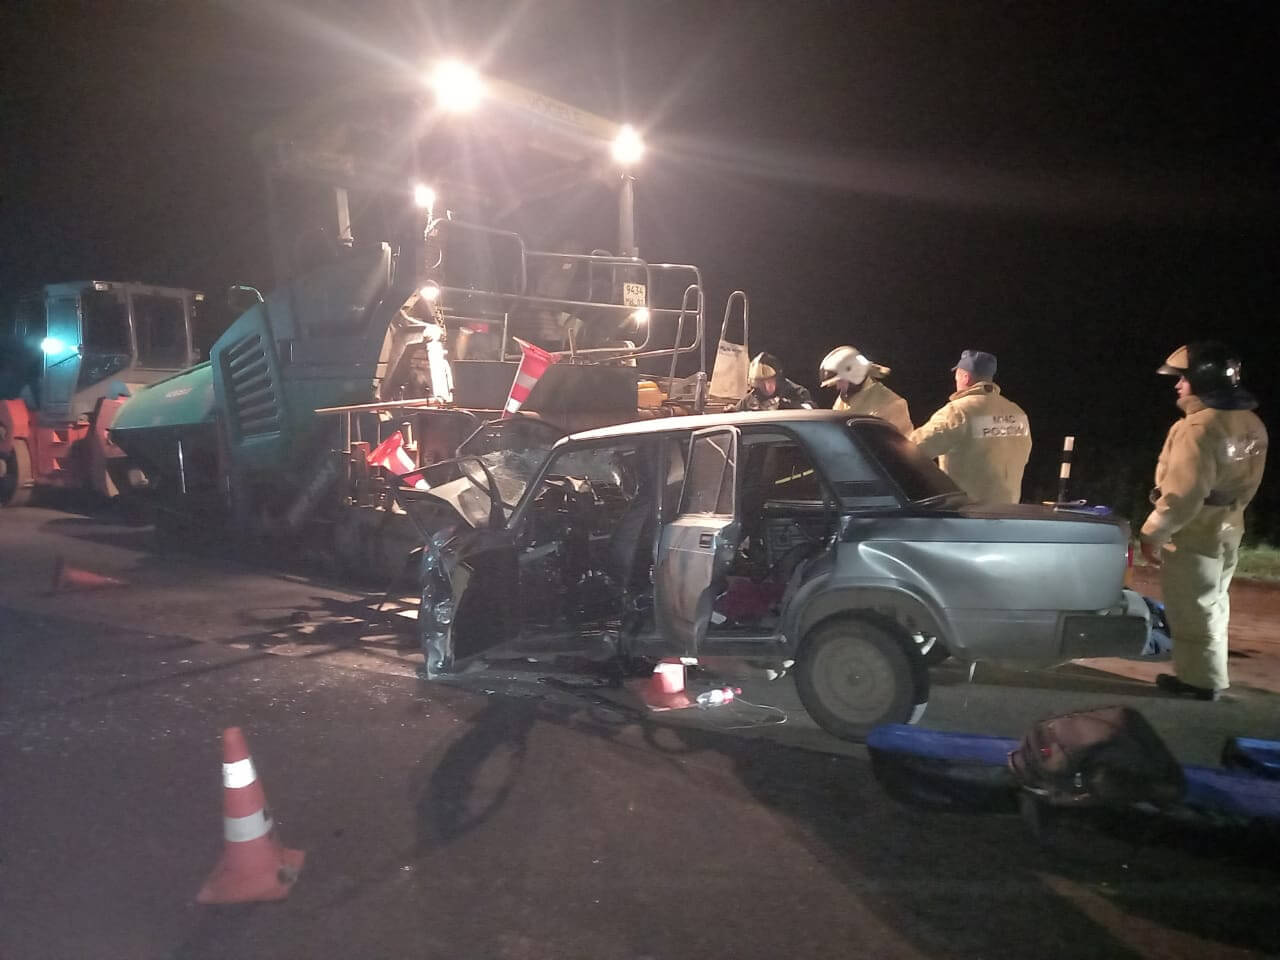 Авария в Краснокамском районе: женщина за рулём ВАЗ-2107 наехала на асфальтоукладчик, 3 человека погибли